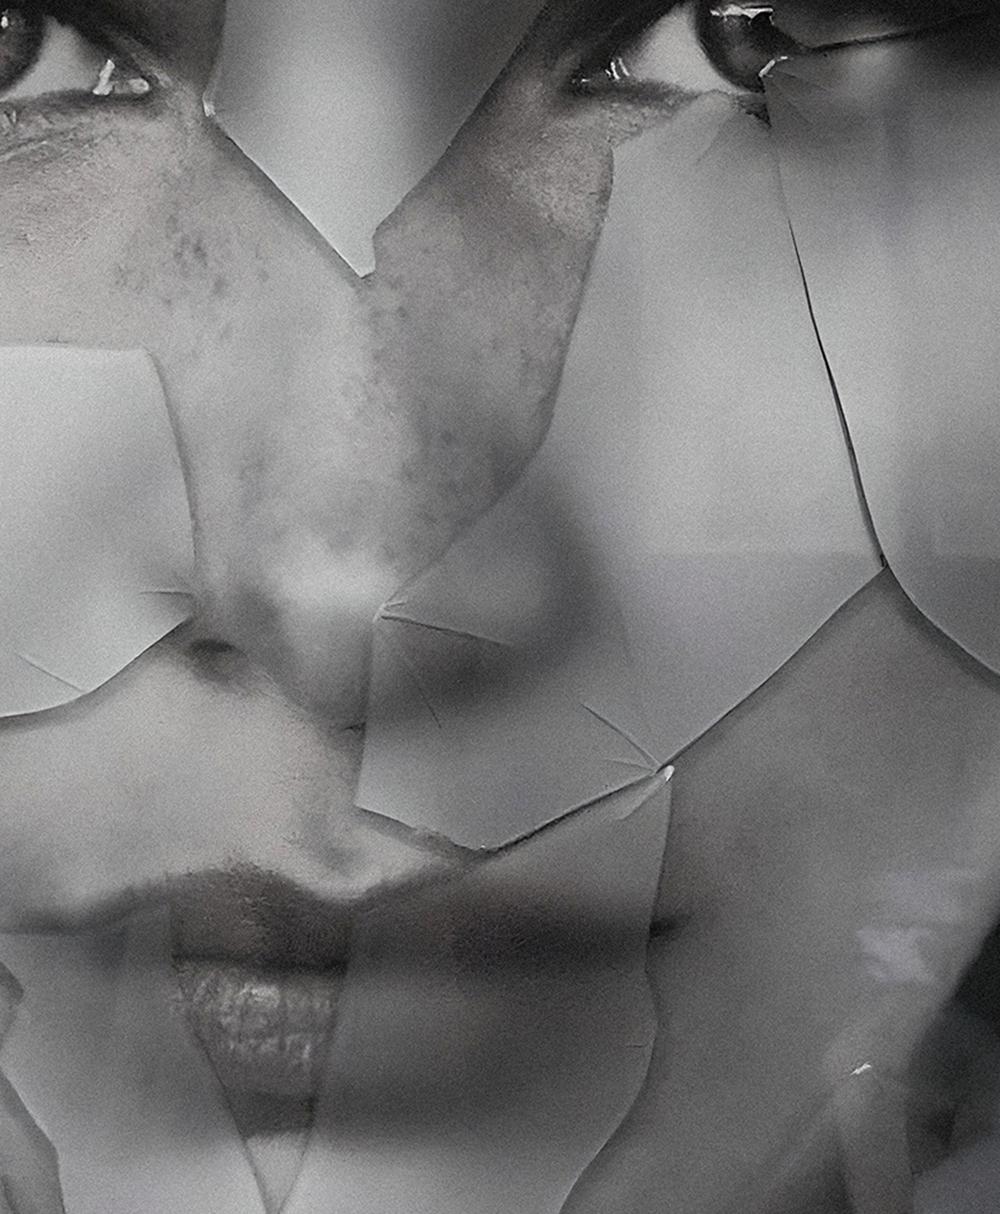 Originale. Bella Hadid, Porträt von Hunter & Gatti
Schwarz-Weiß-Fotografie mit Glasscherben oben auf dem Bild.
Bildgröße: 45,2 Zoll. H x 32,5 in. W
Rahmengröße: 52,5 Zoll. H x 39 in. B x 2 in. D
Einzigartig

Die Technik des Künstlers besteht in der